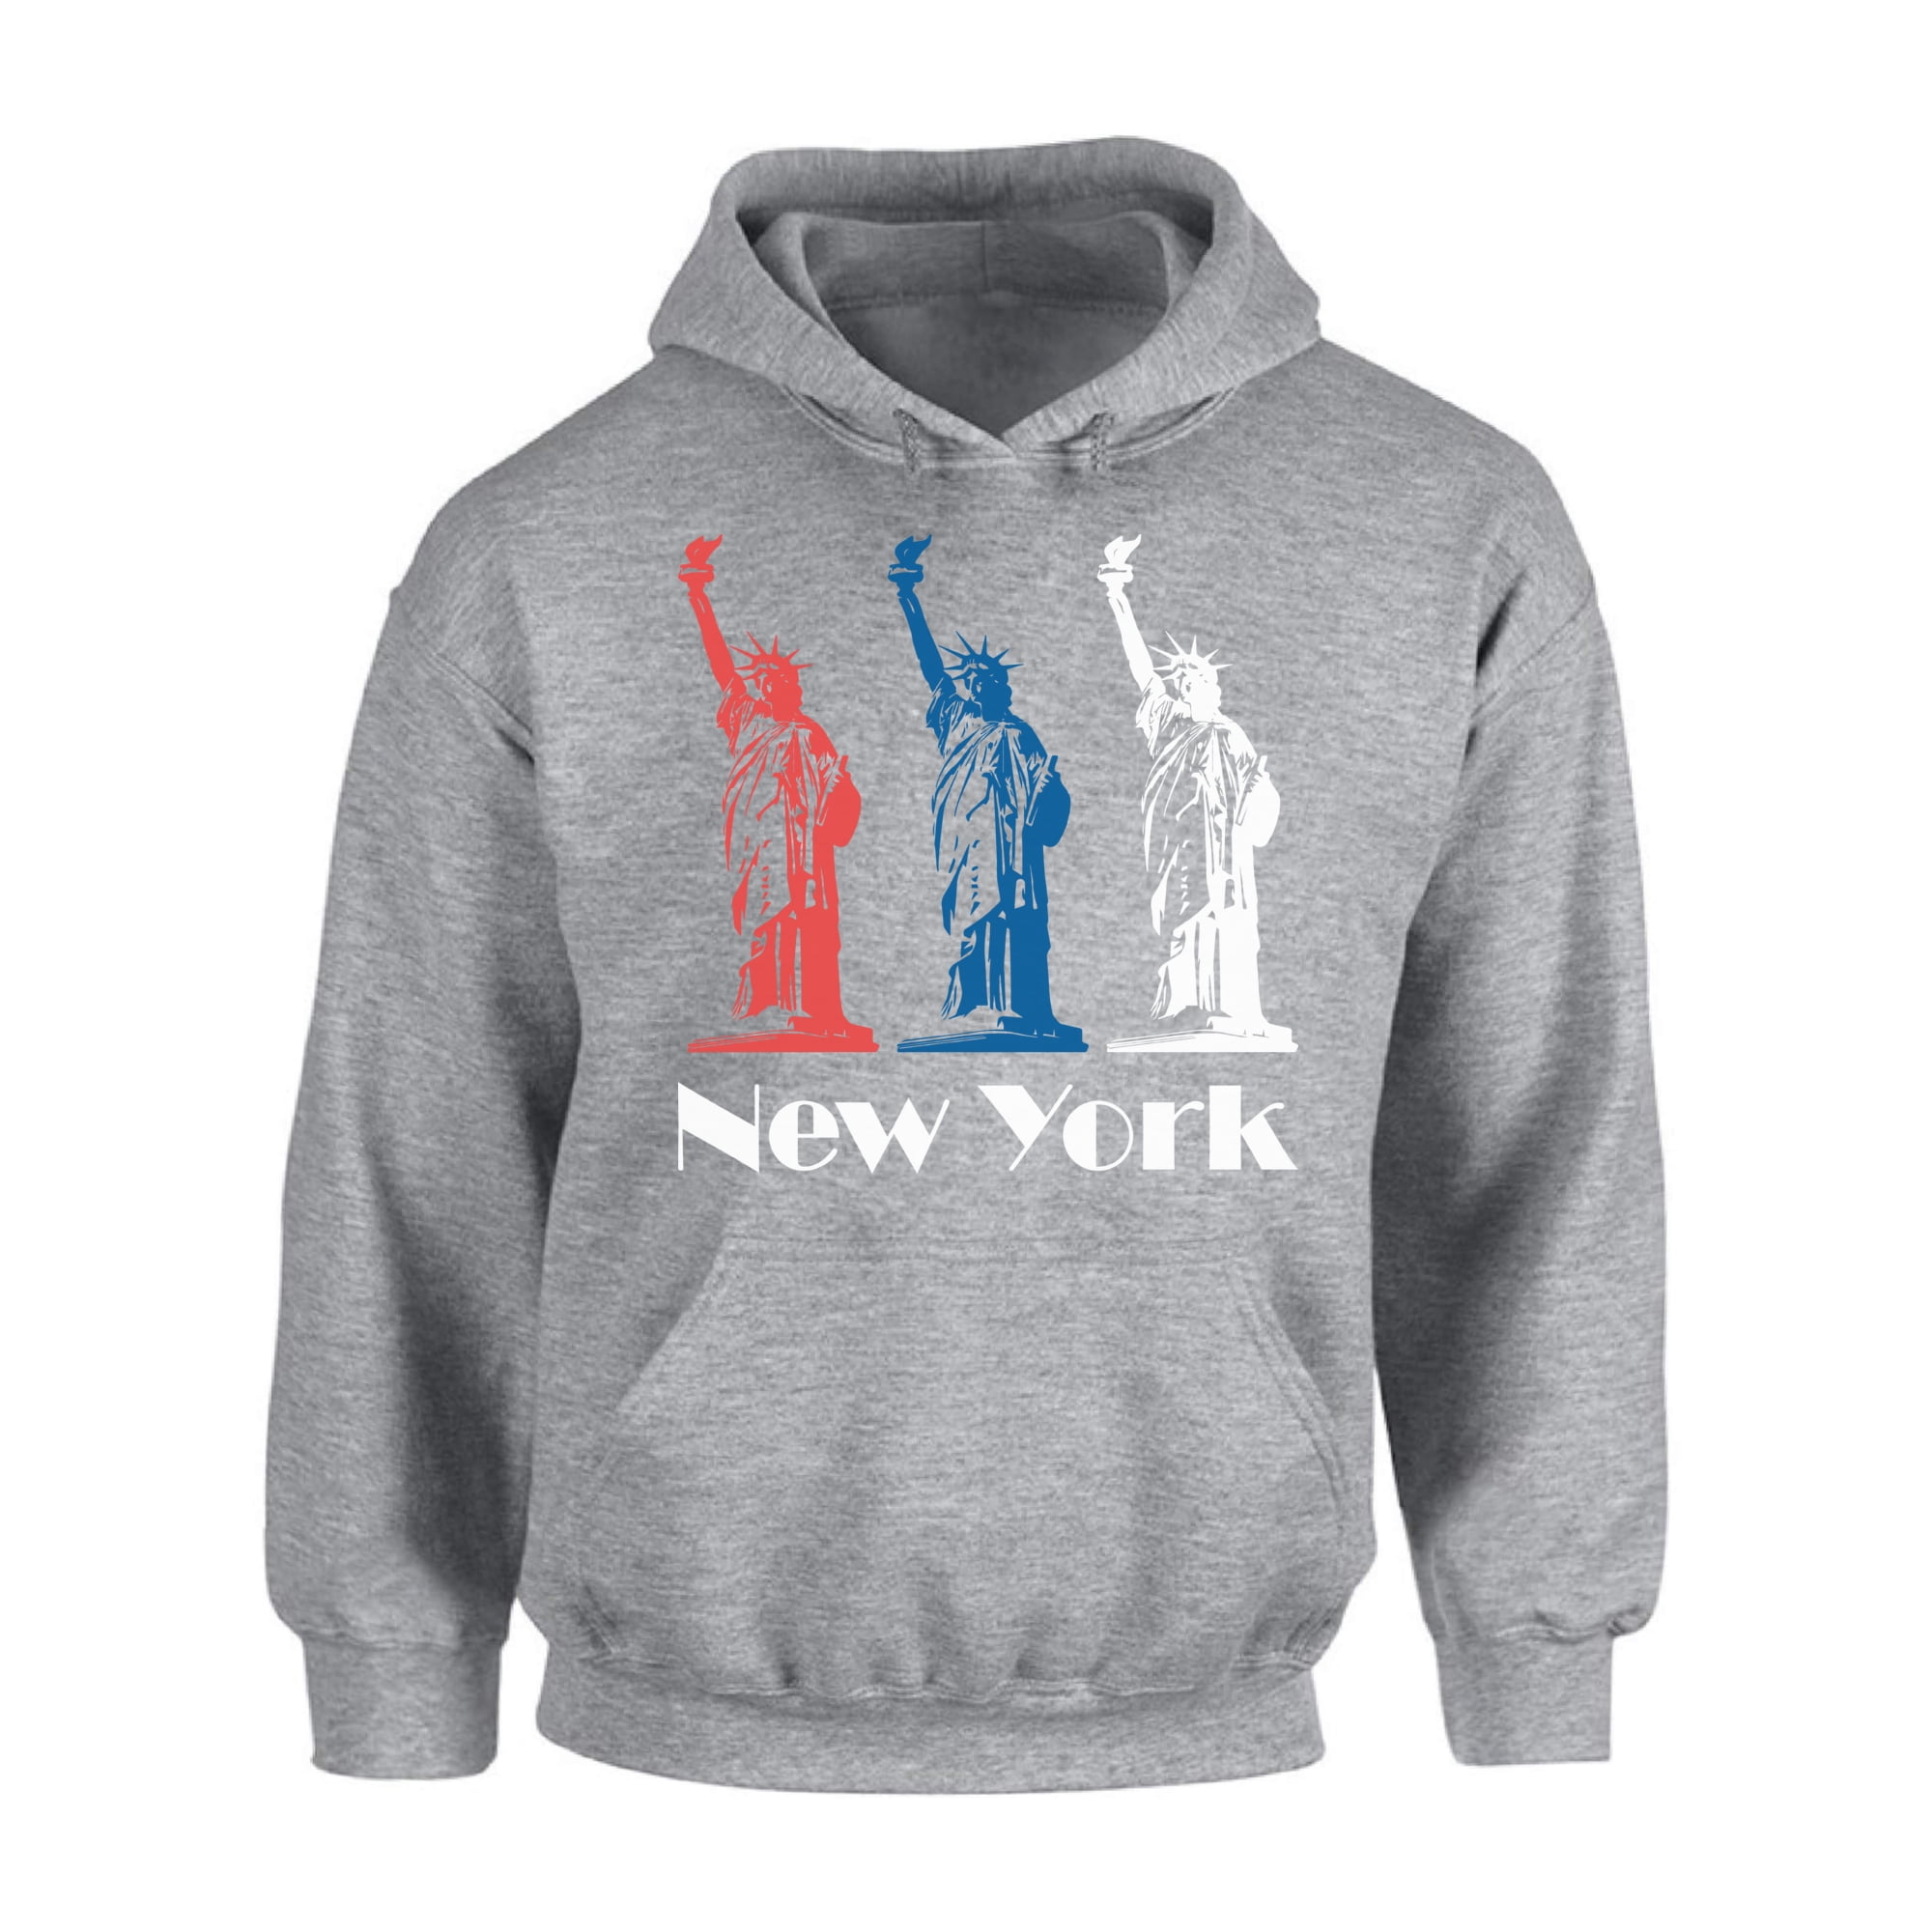 New York Hoodie Sweatshirt - Statue of Liberty Gift - NYC Novelty